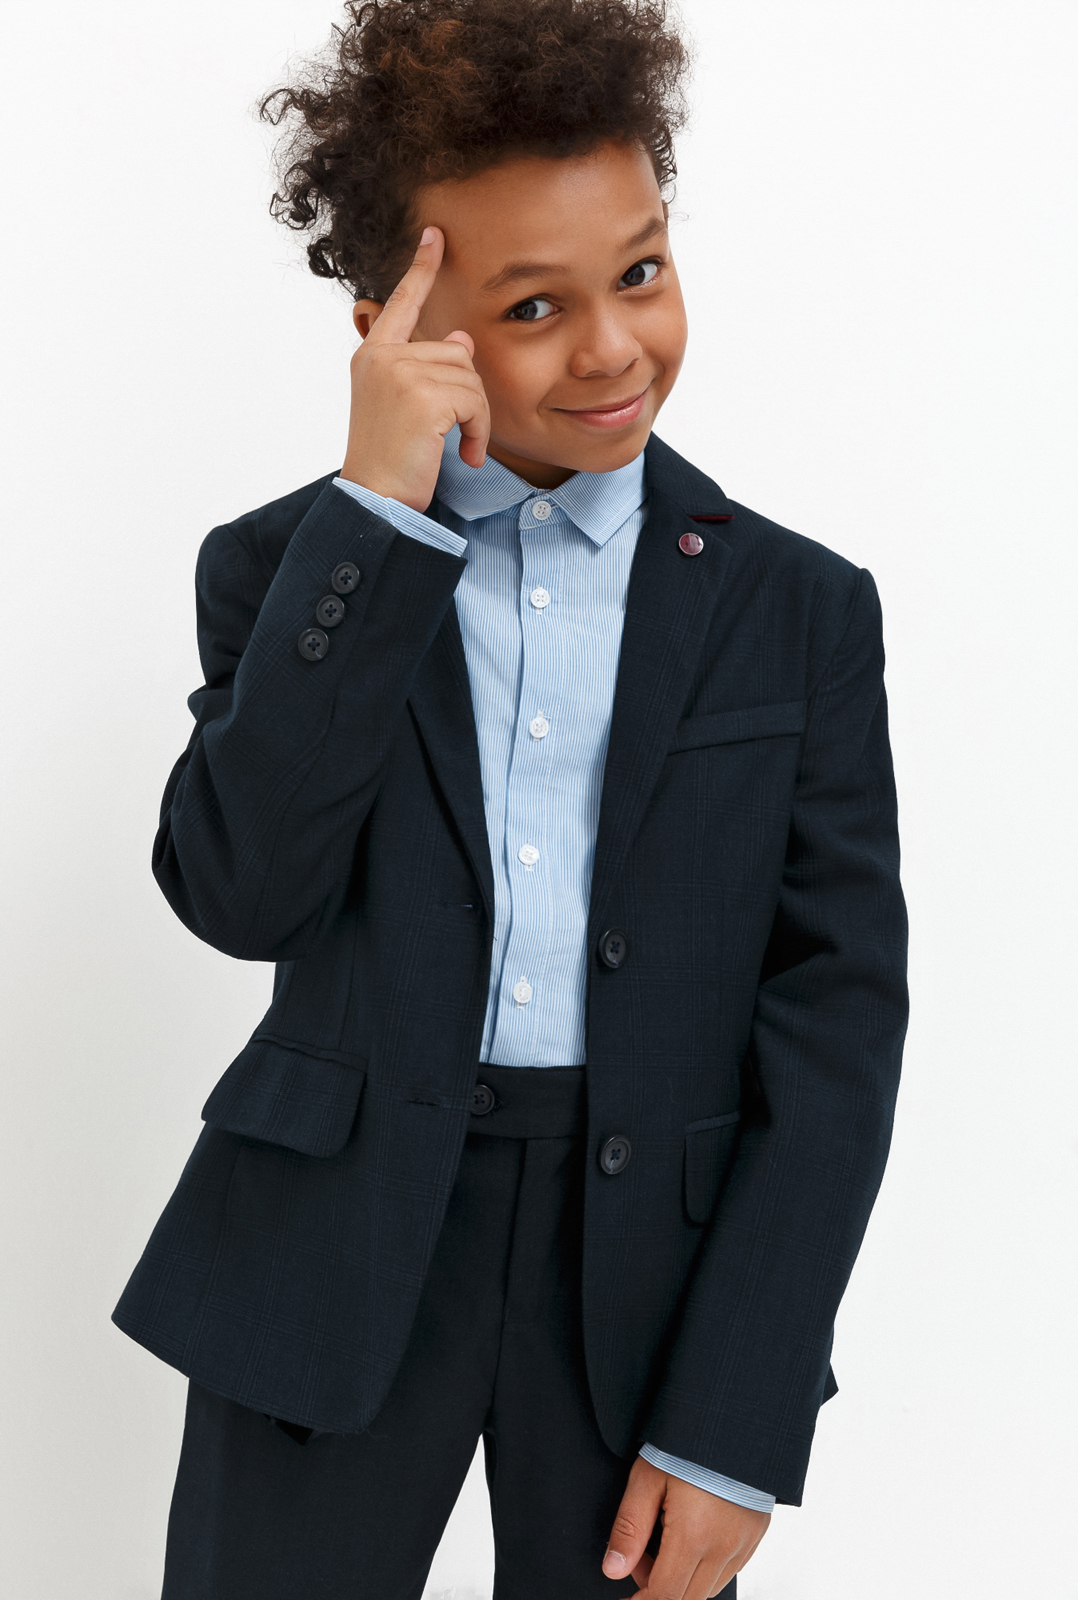 Пиджак для мальчика Acoola Chandler, цвет: темно-голубой. 20140130030_600. Размер 152